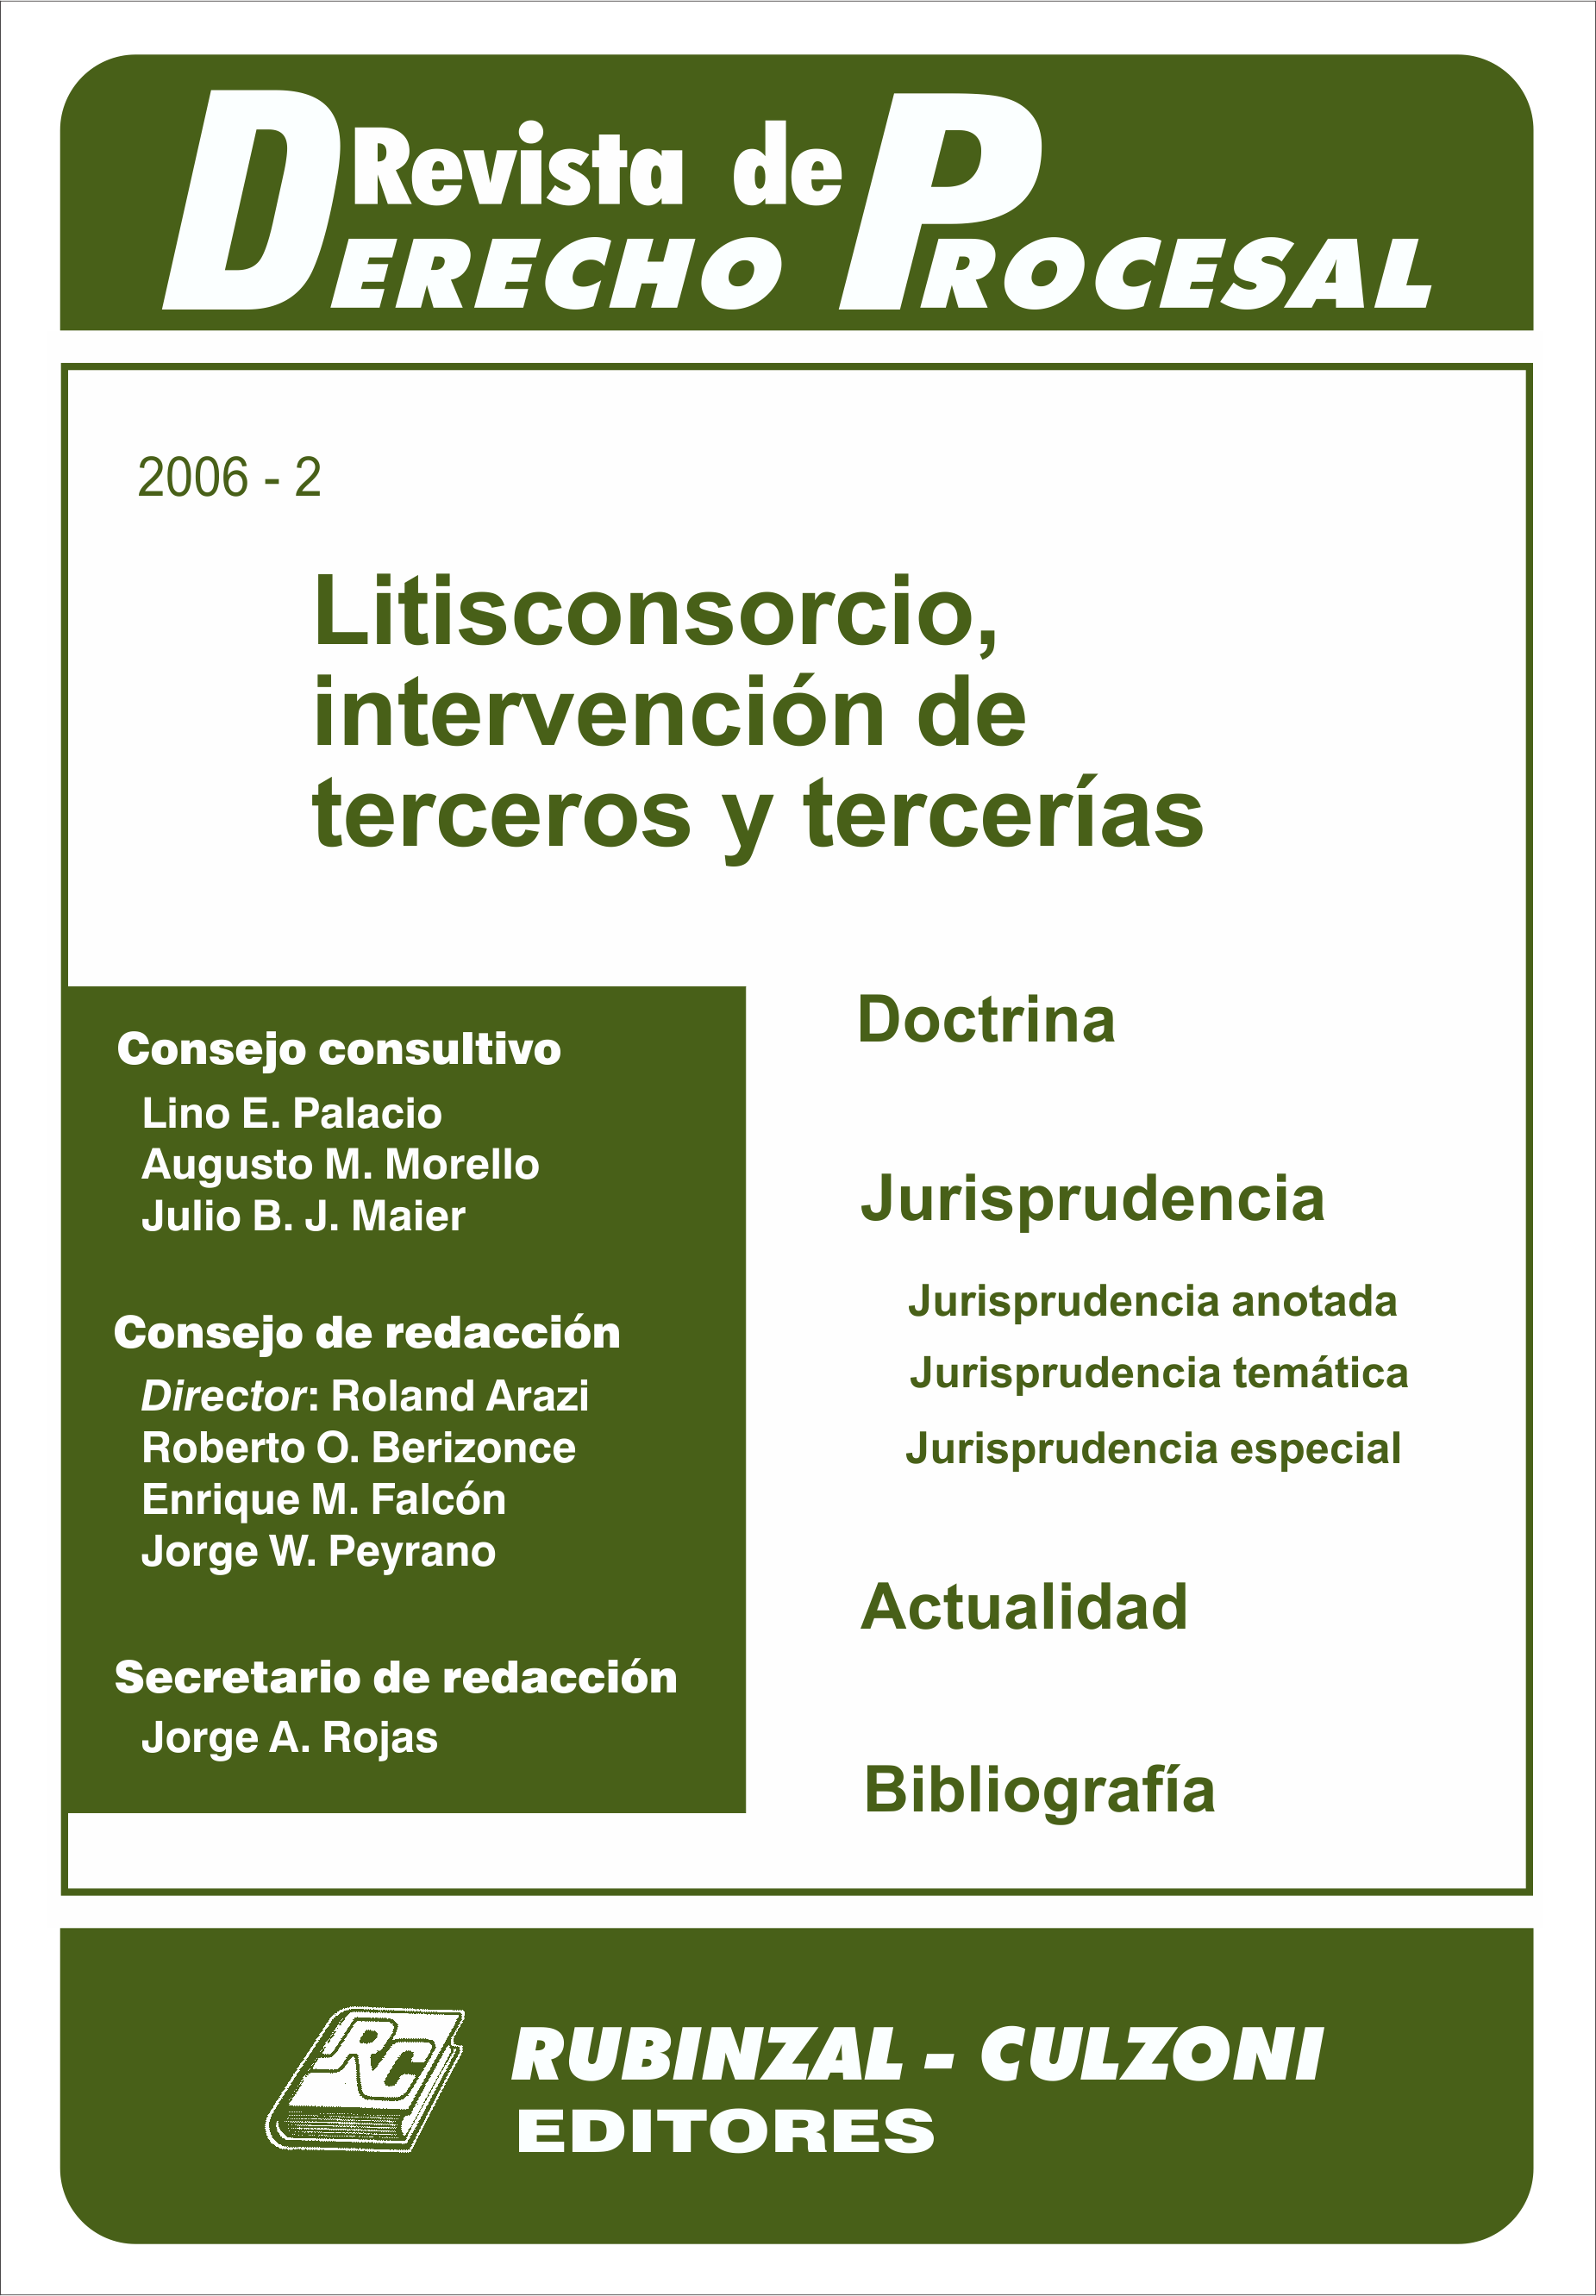 Revista de Derecho Procesal - Litisconsorcio